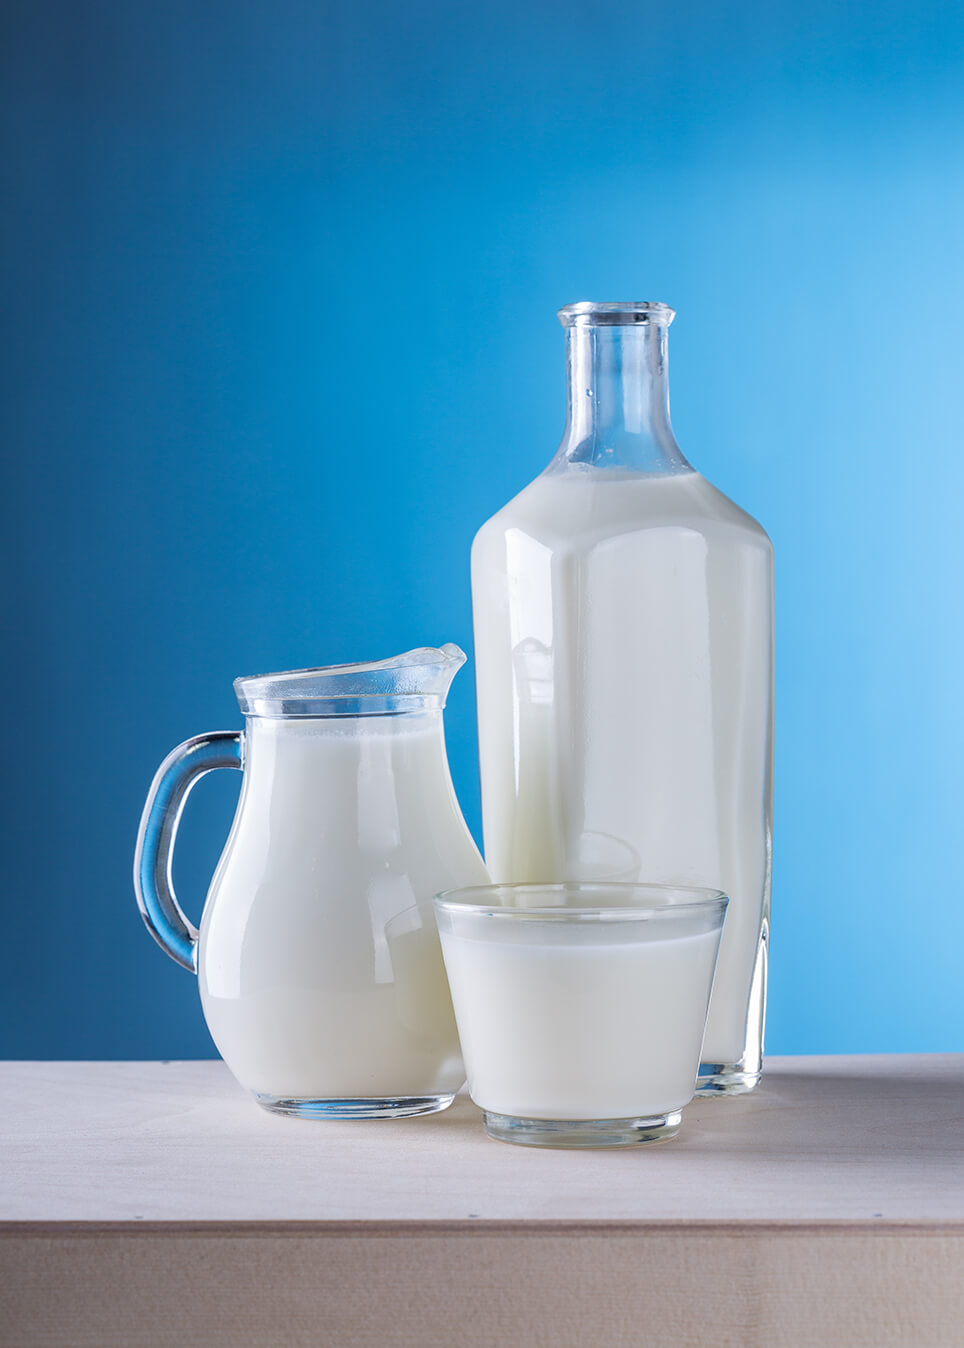 milk soy milk oat milk almond milk 식물성우유 동물성 우유 소이밀크 두유 오트밀크 귀리우유 아몬드 우유 건강 관련